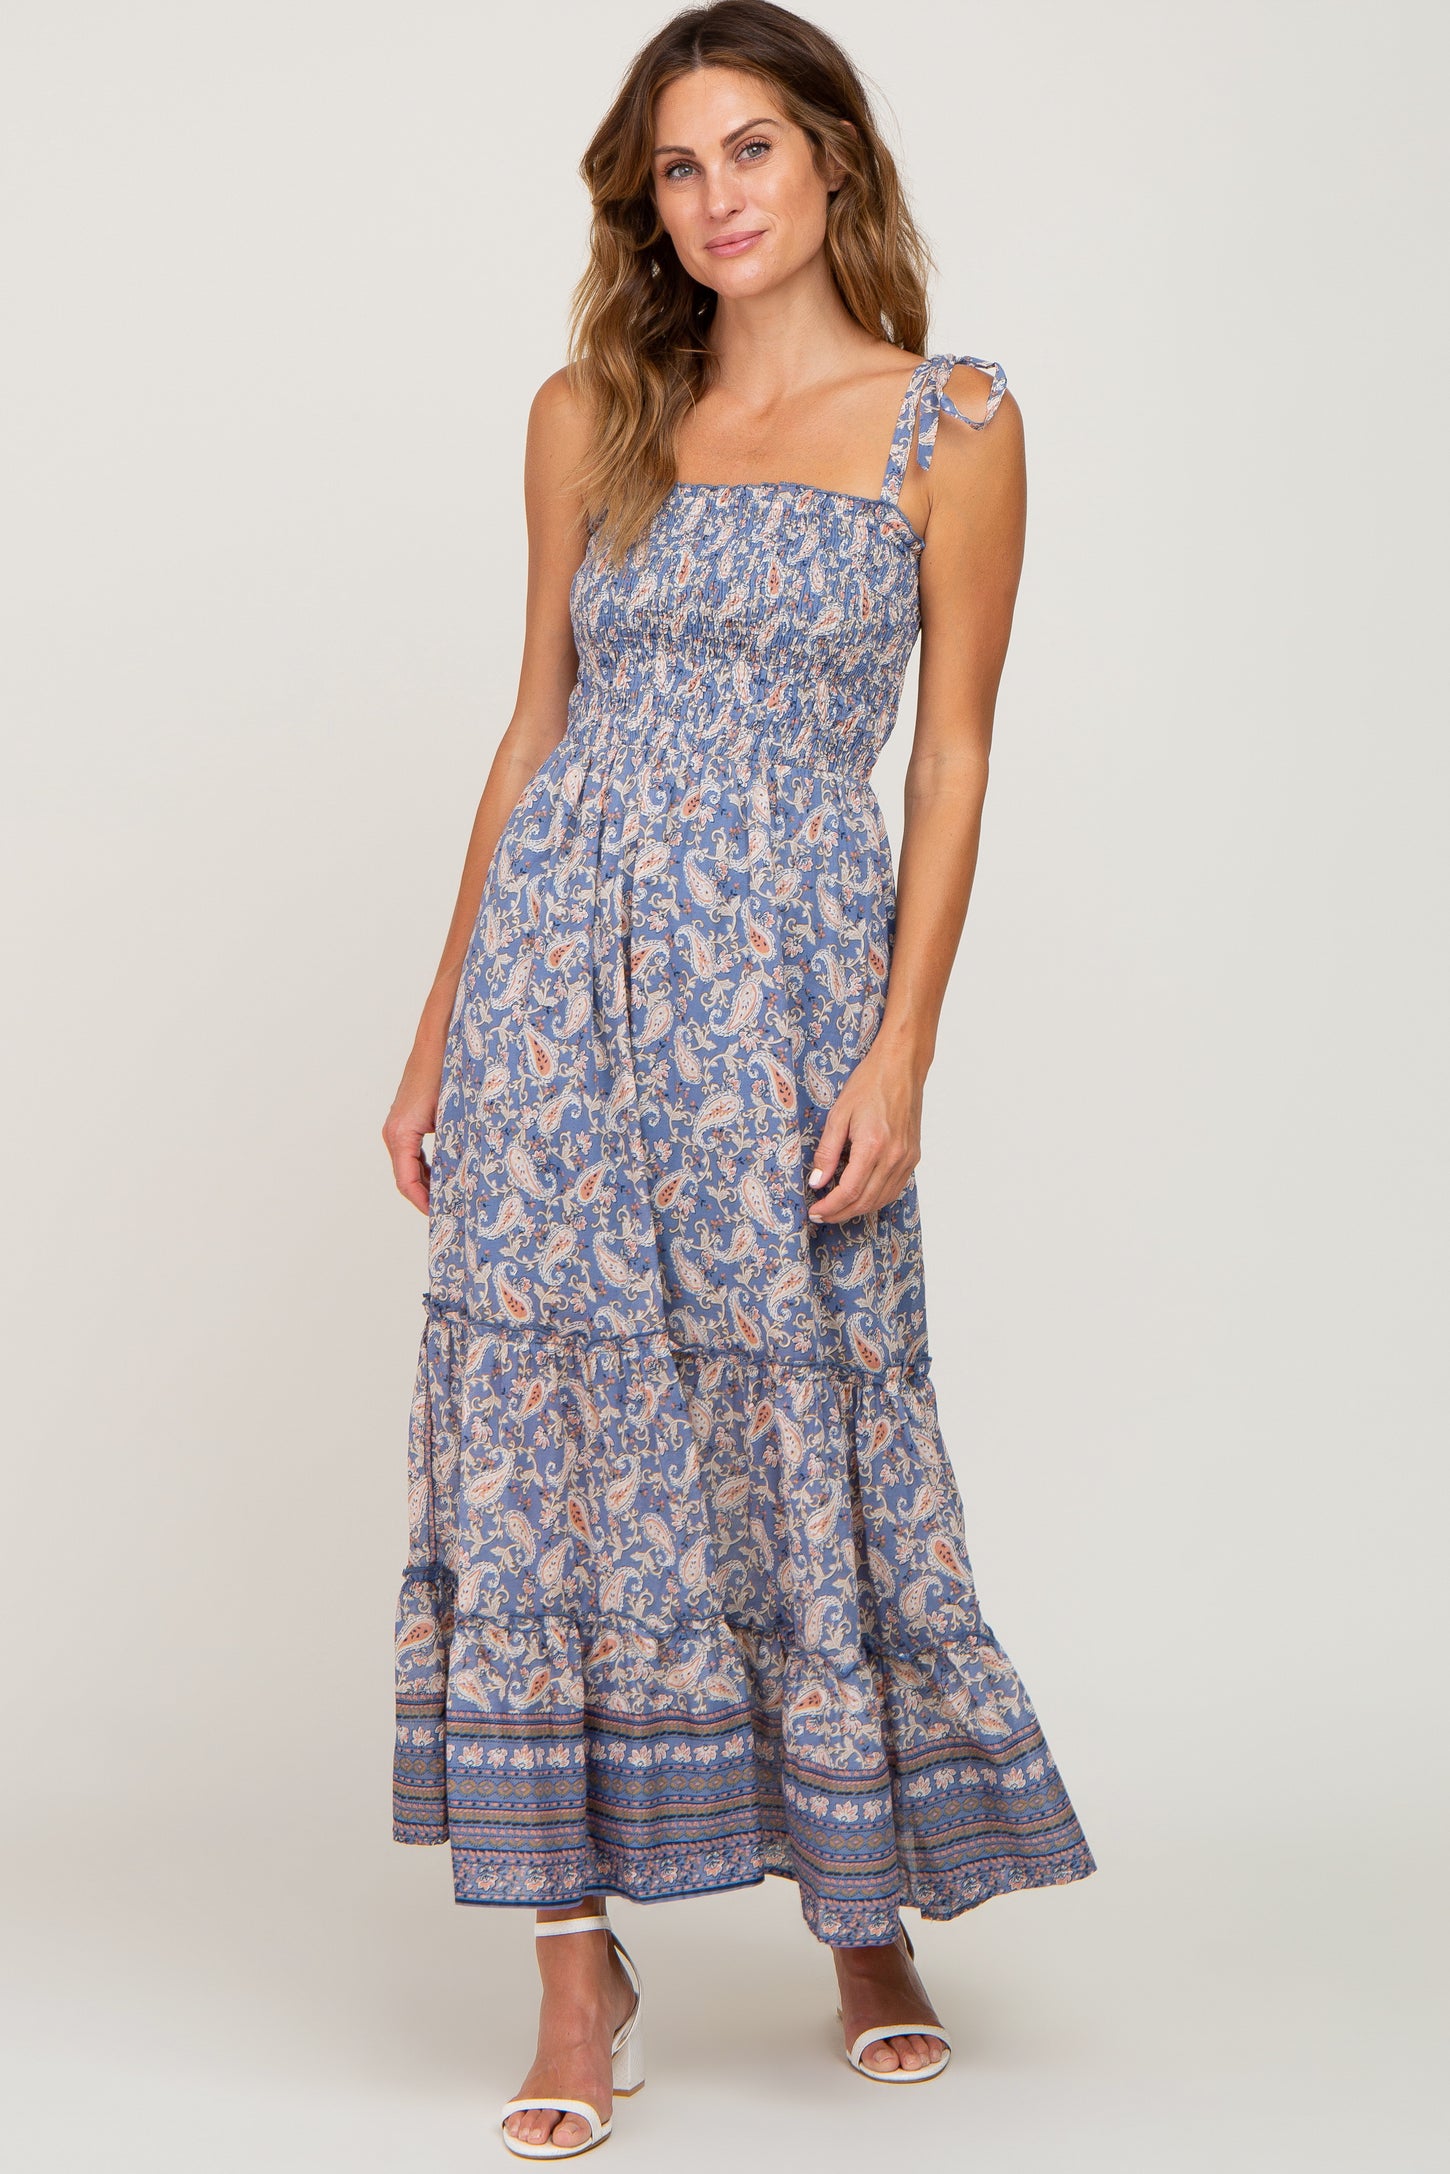 Blue Paisley Print Sleeveless Ruffle Hem Maternity Maxi Dress– PinkBlush